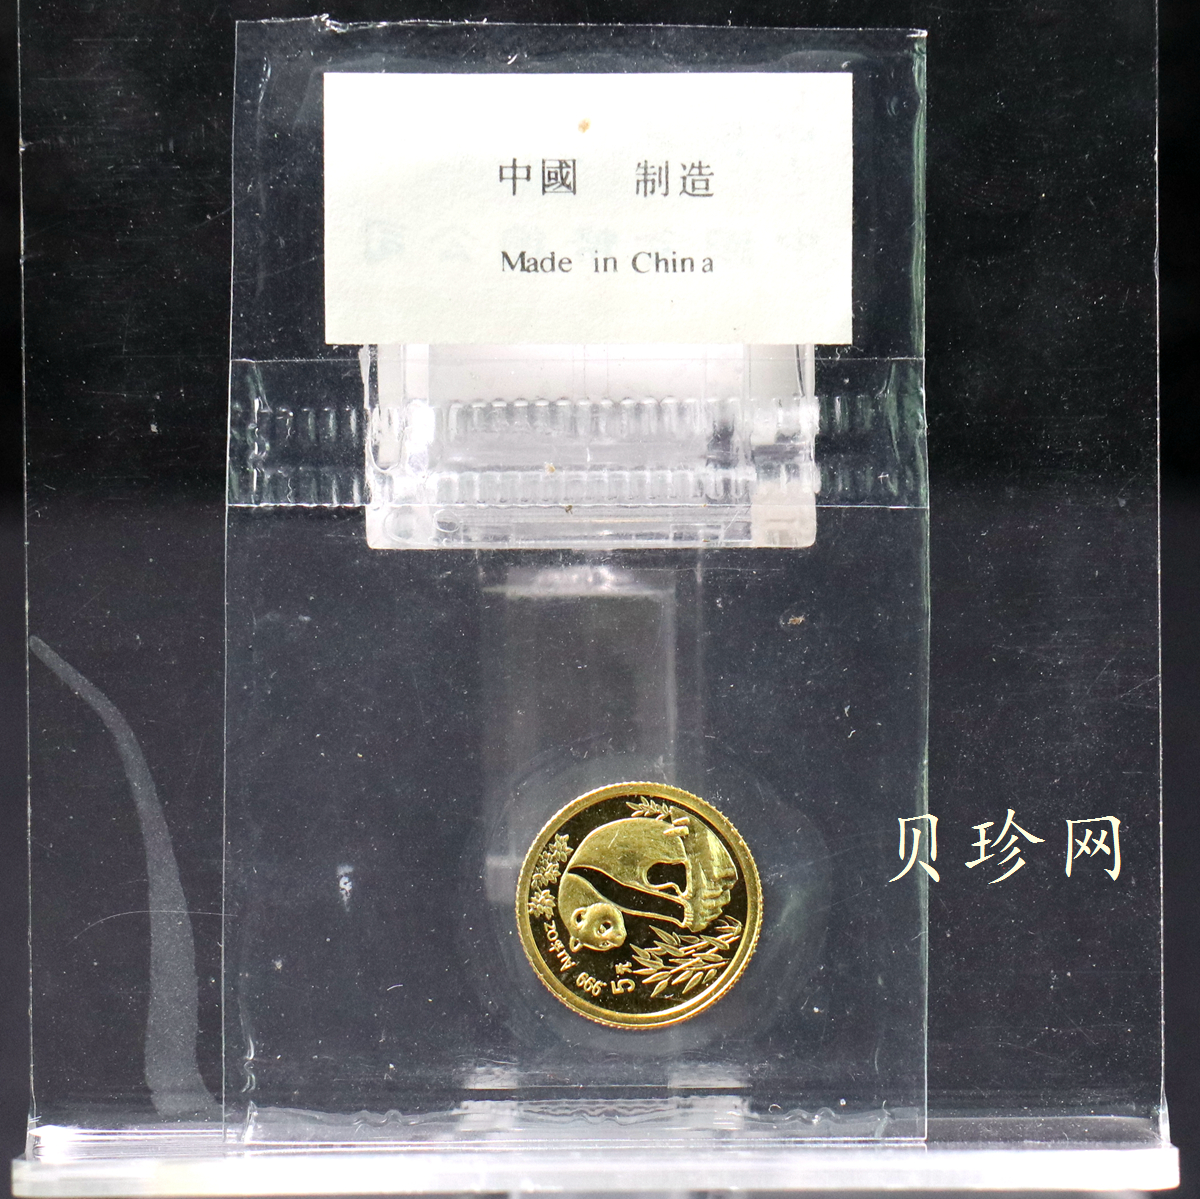 【930105】1993年熊猫1/20盎司普制金币